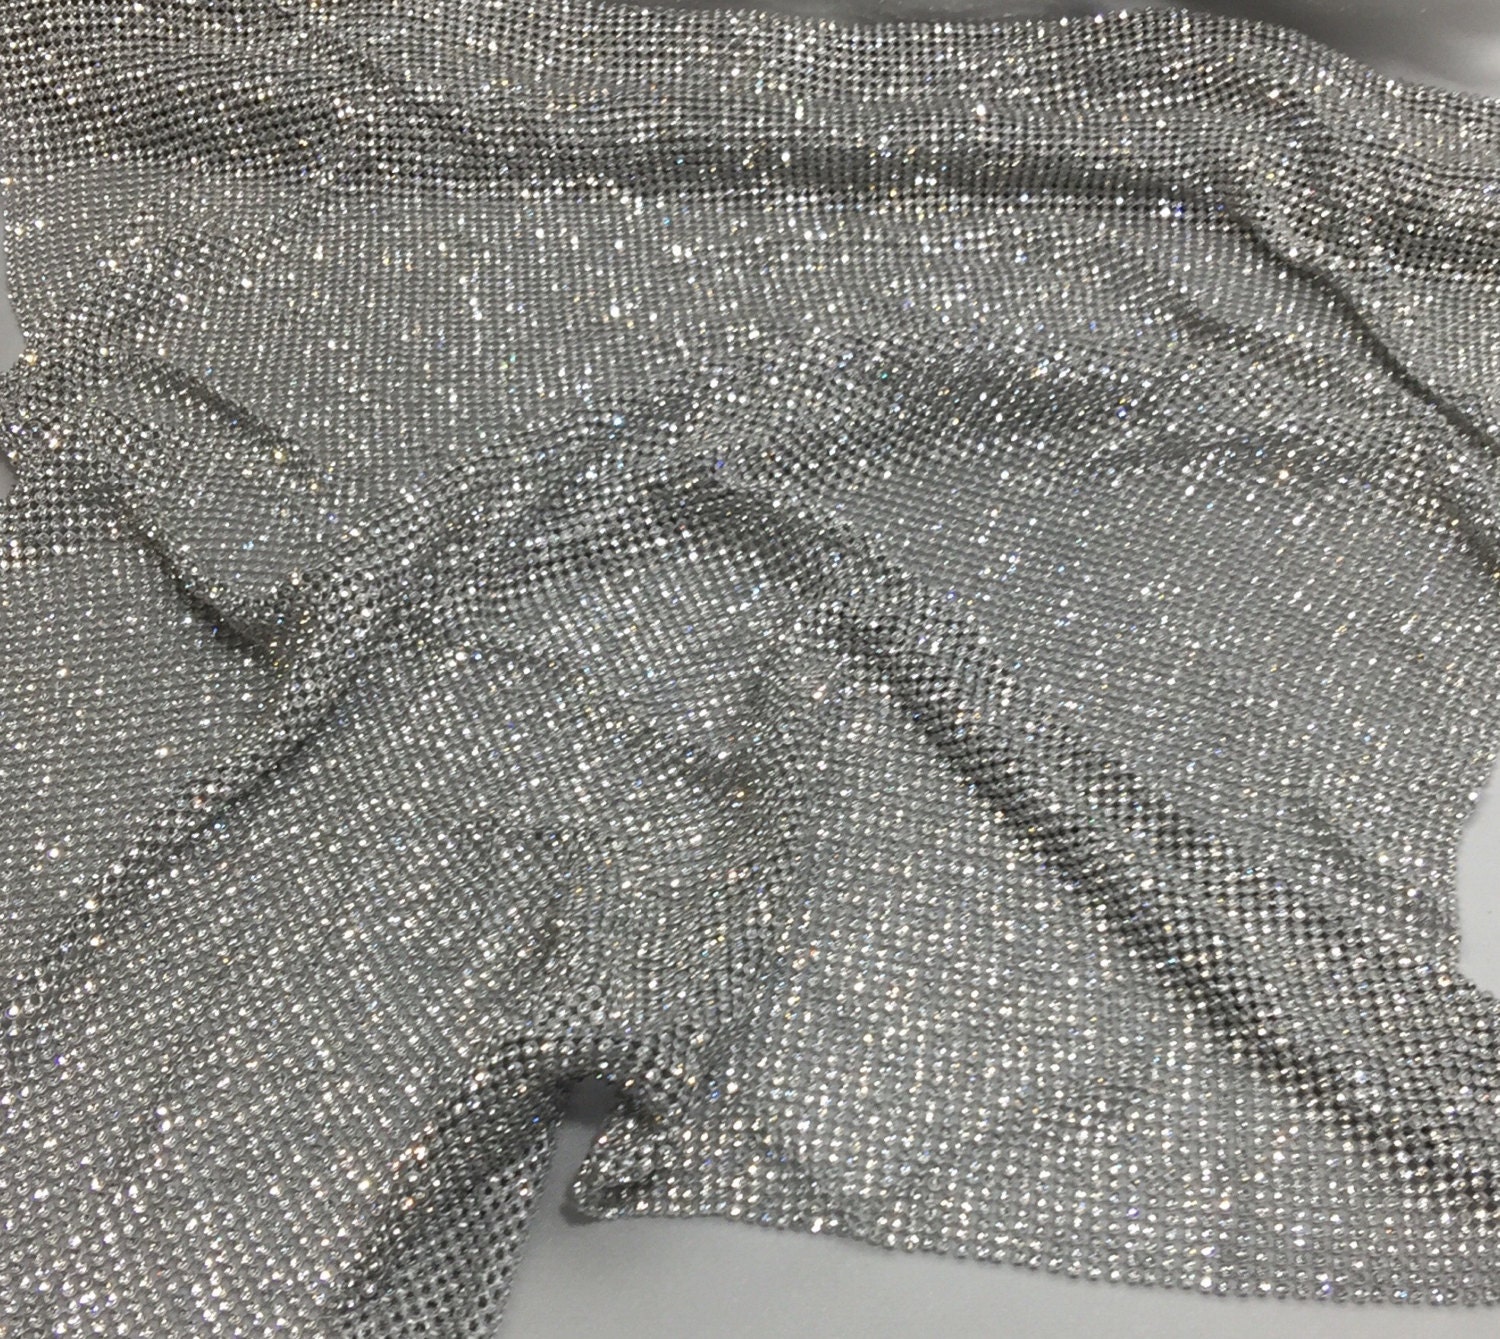 Silver Rhinestone Sheet Crystal Rhinestone Fabric - Etsy